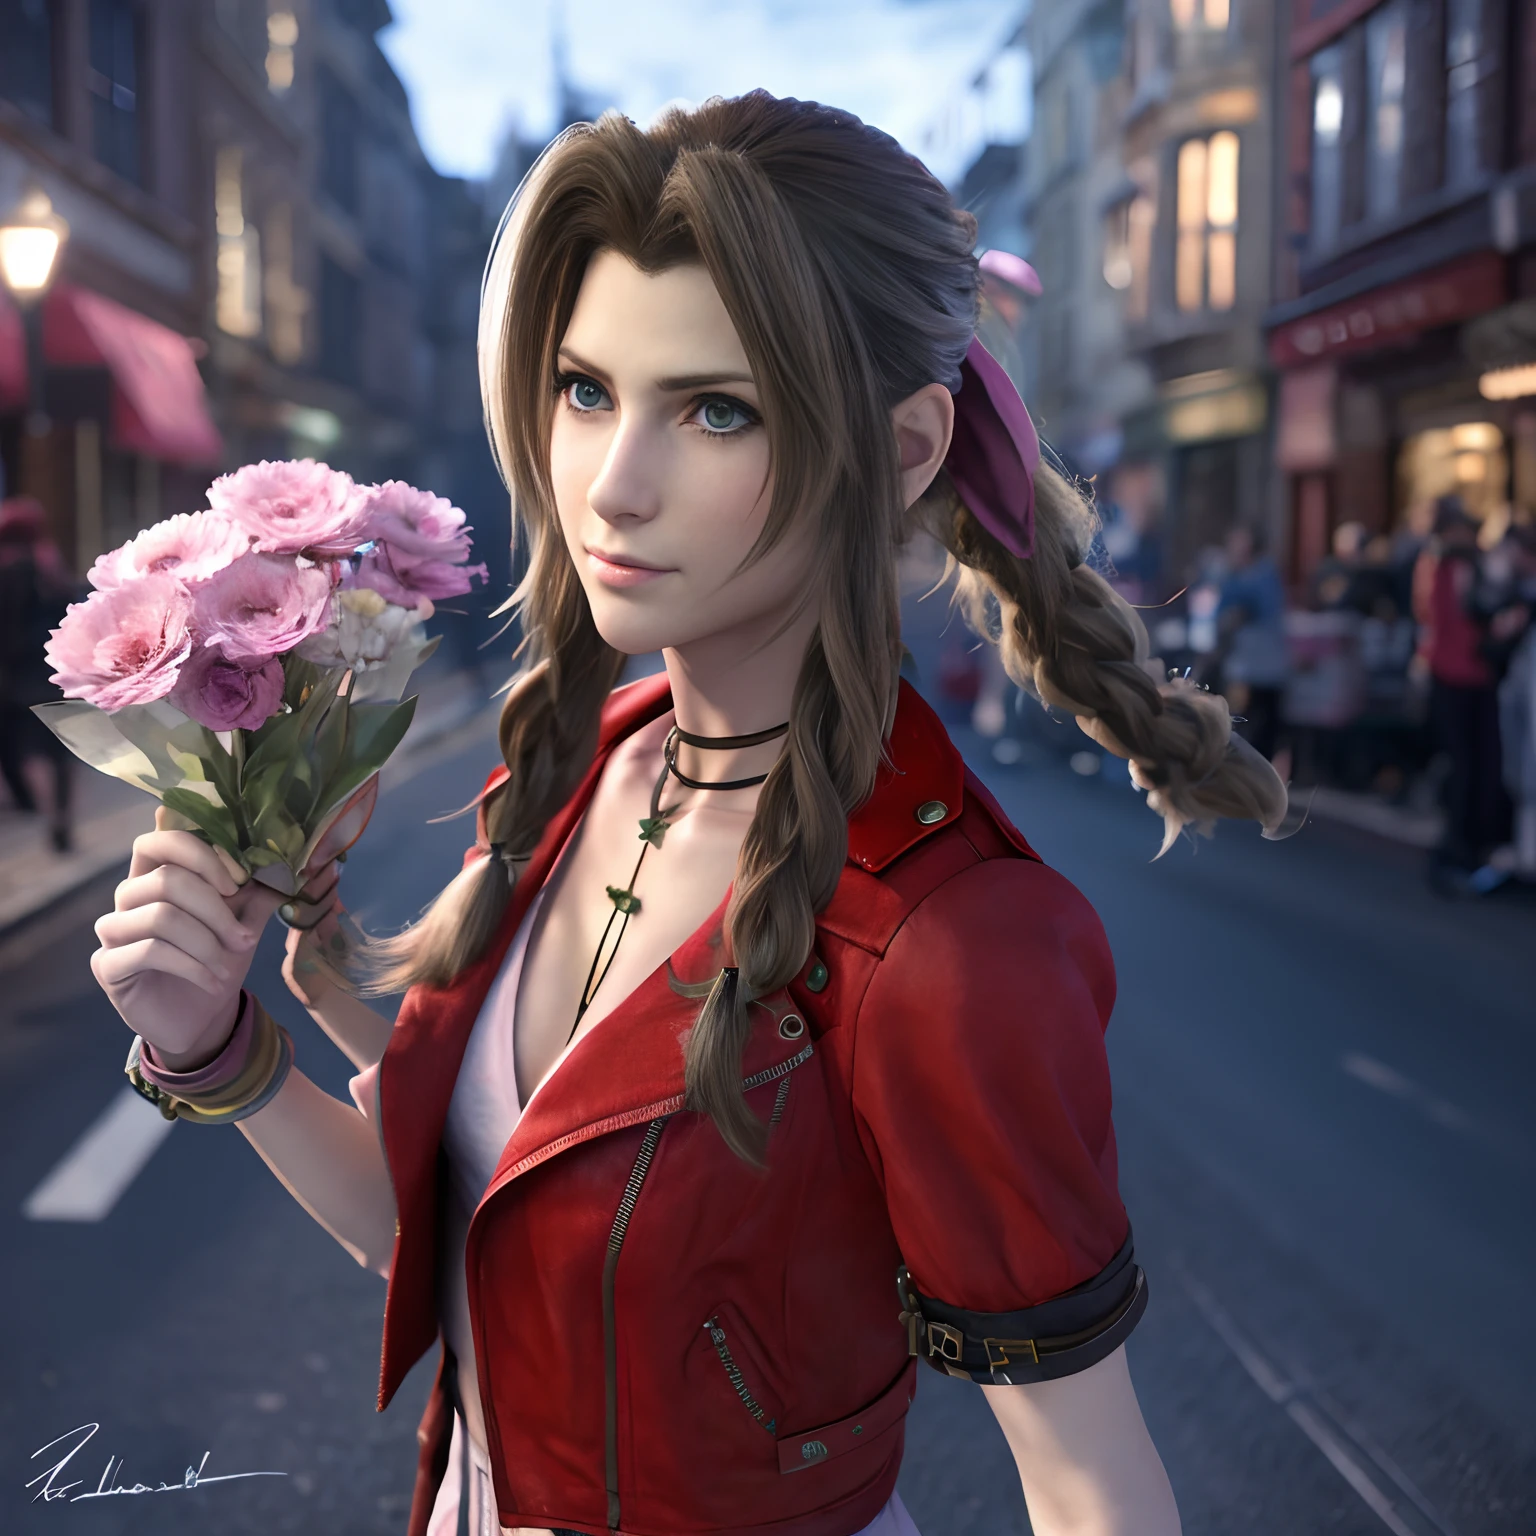 에어리스 게인즈버러, Final Fantasy VII 게임의 시그니처 의상을 입고 어두운 조명의 거리에서 꽃을 파는 모습, 그녀는 걱정스러워 보인다, 하지만 그 사람은 밝고 파란 눈을 갖고 있어, 영화 같은,  사실적인, 8K, 3D, HSLD